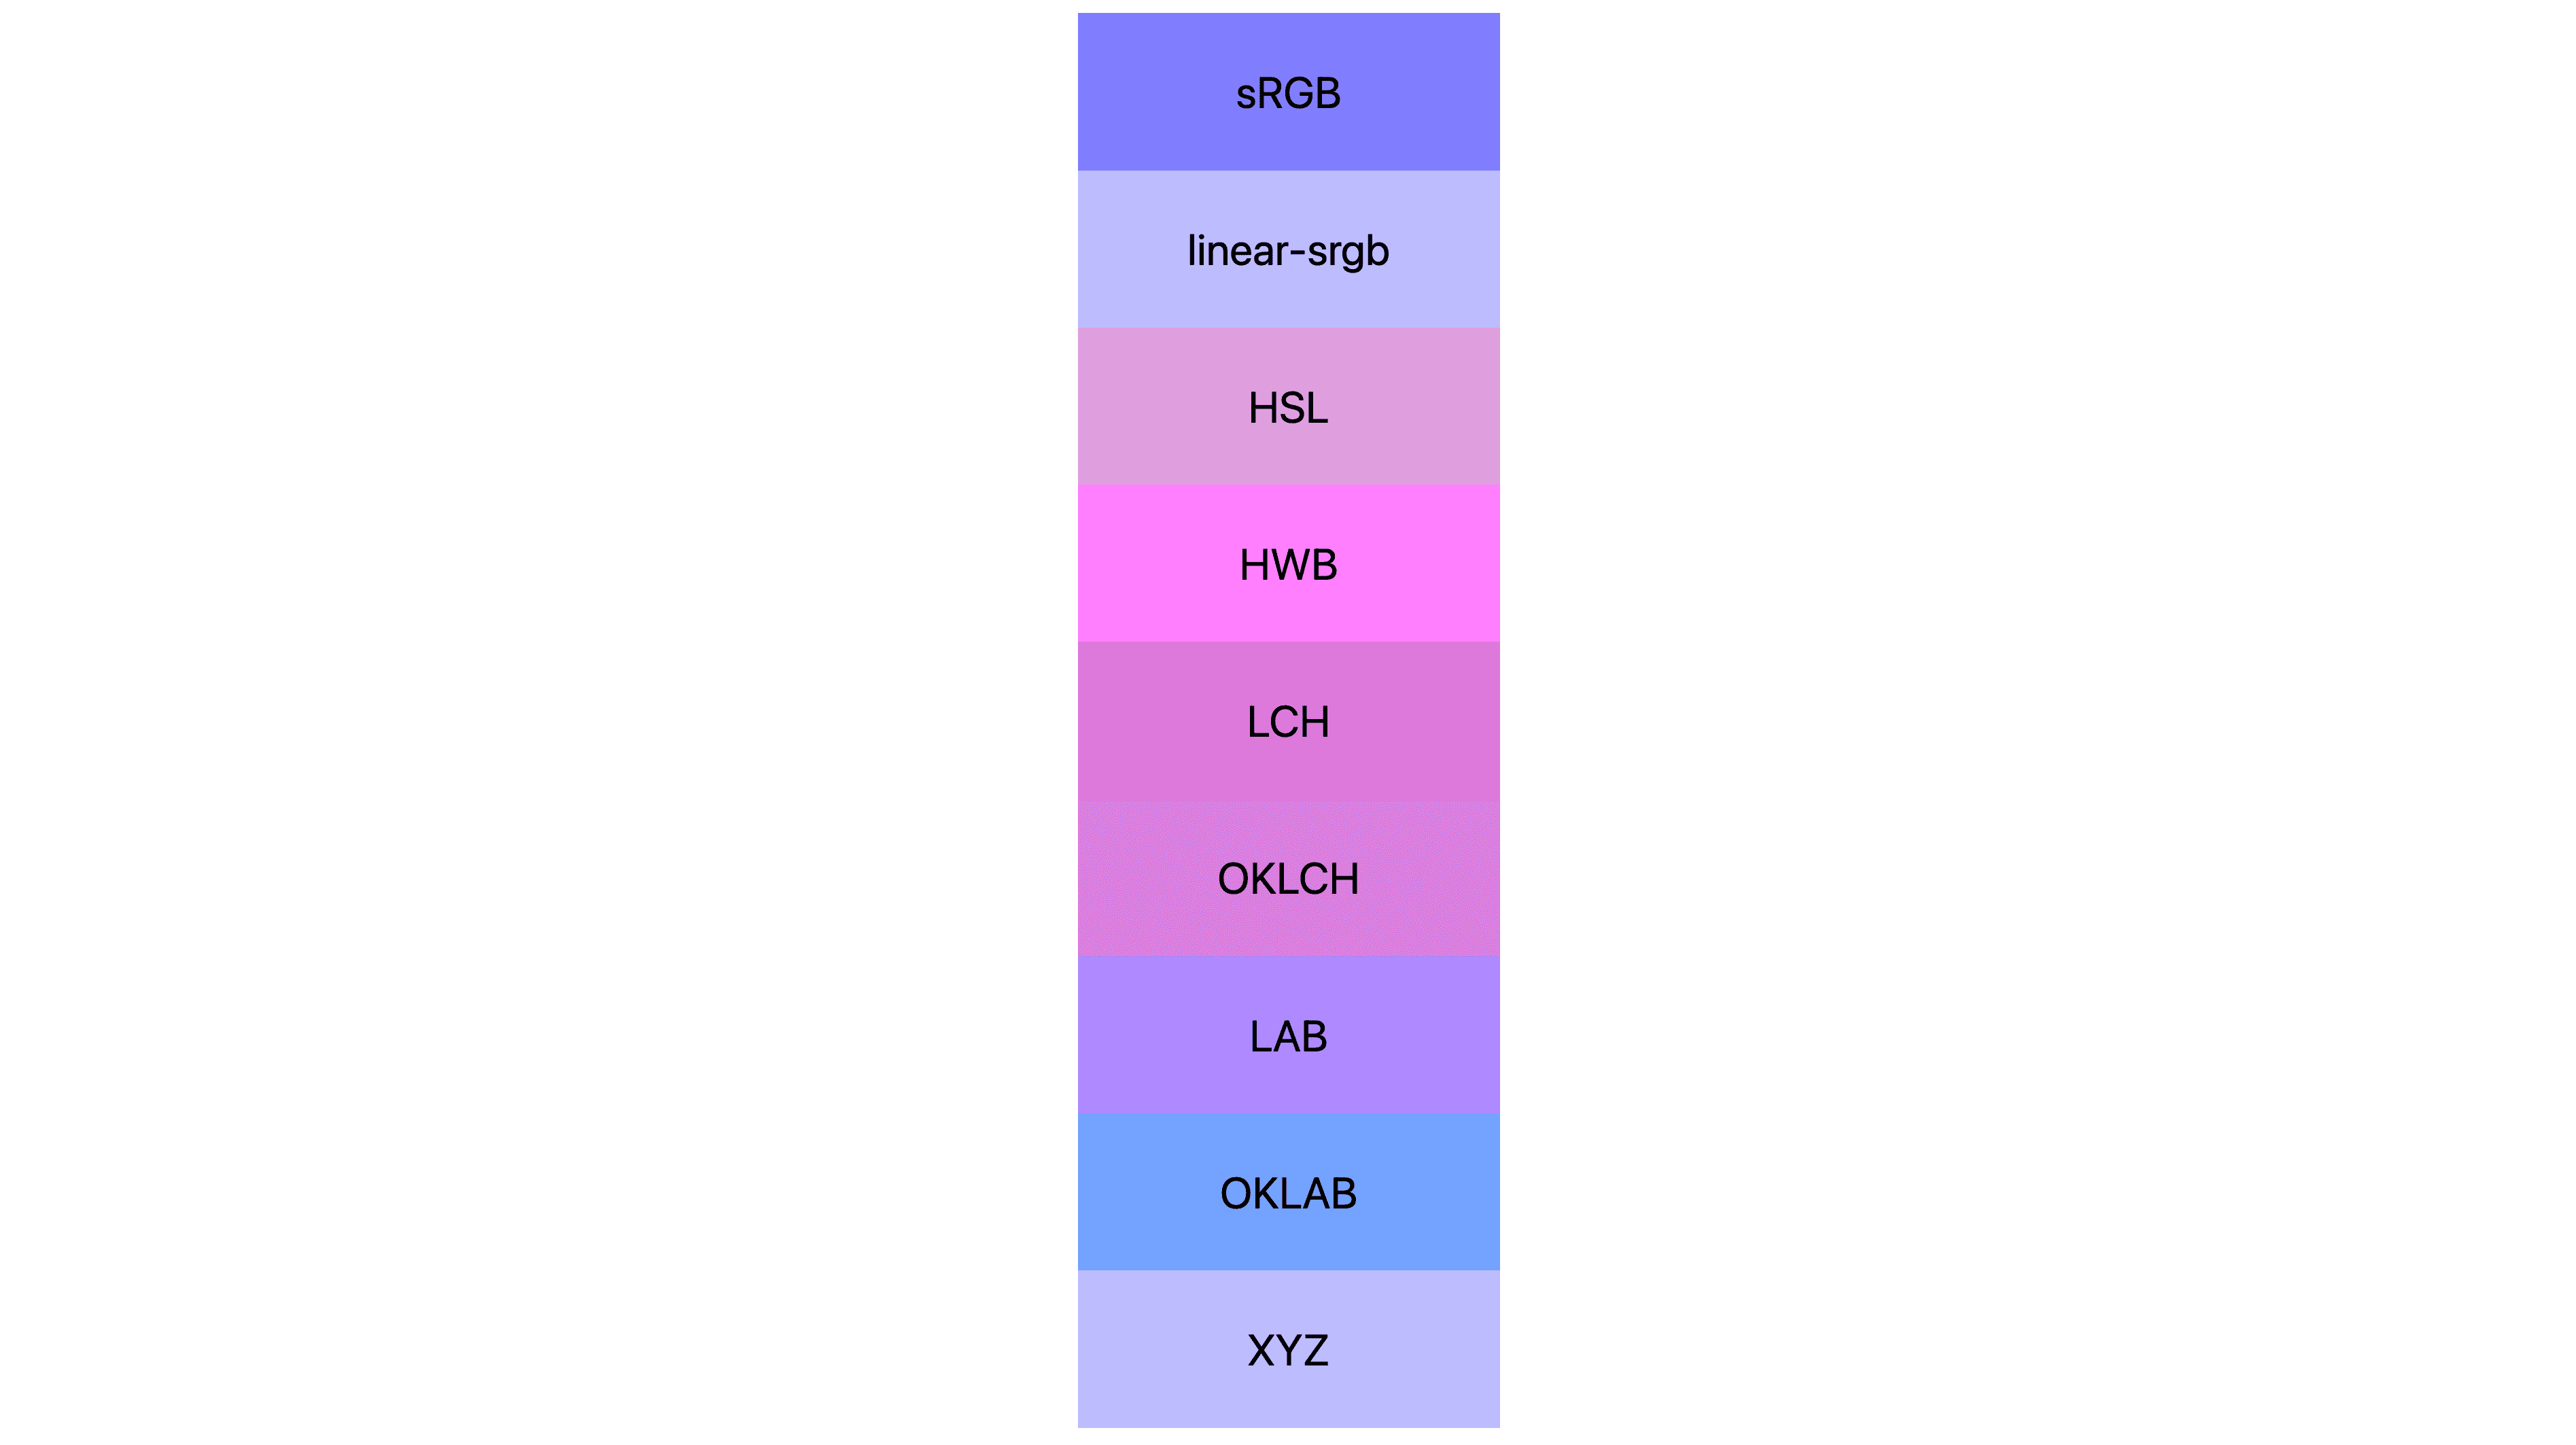 7টি রঙের স্থান (srgb, linear-srgb, lch, oklch, lab, oklab, xyz) প্রতিটিতে বিভিন্ন ফলাফল দেখানো হয়েছে। অনেকগুলি গোলাপী বা বেগুনি, কিছু আসলে এখনও নীল।